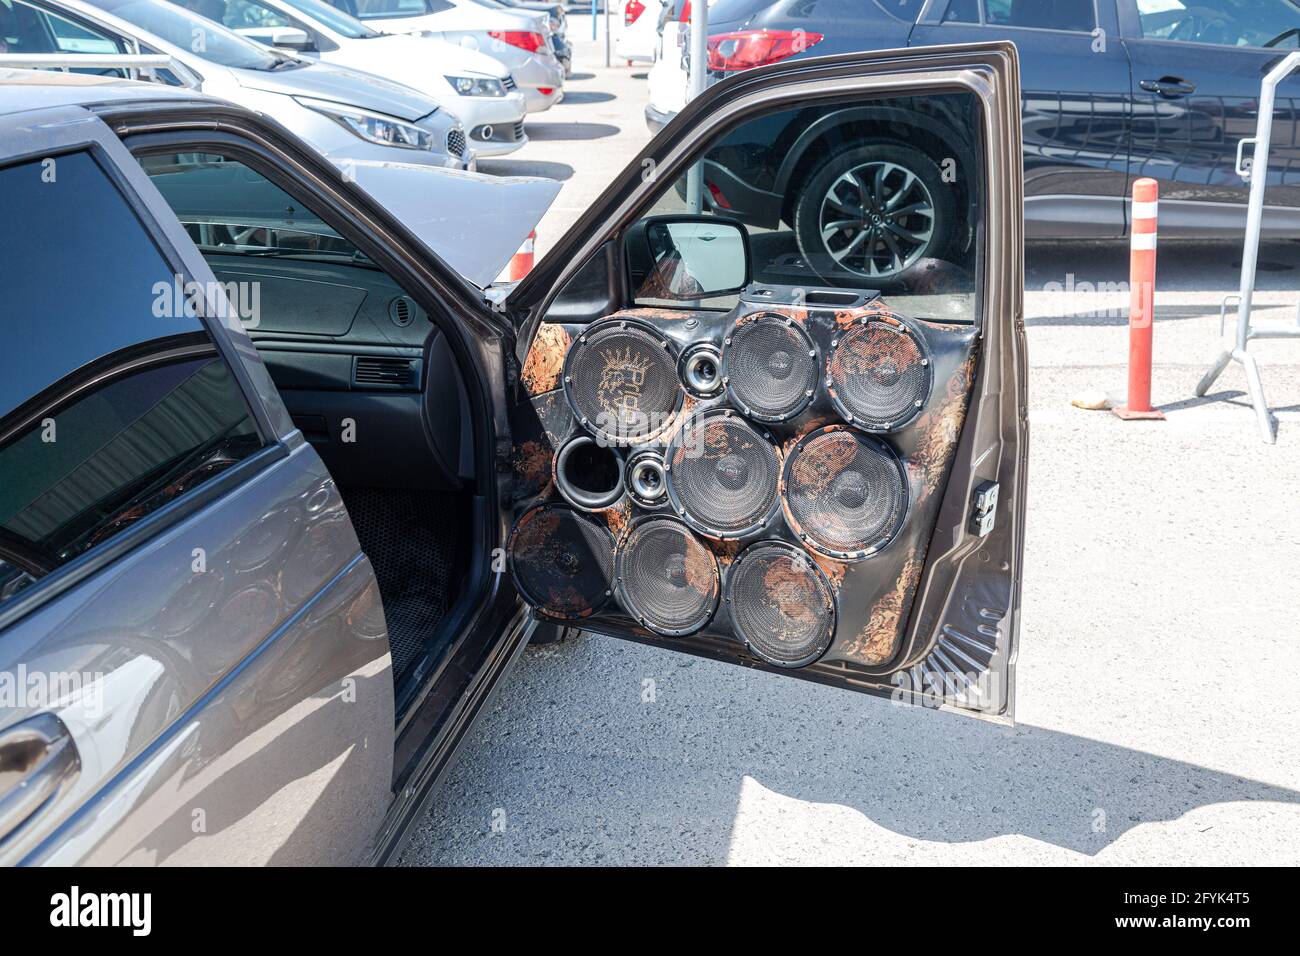 Samara, Rusia - 15 de mayo de 2021: Puerta delantera del vehículo montada con los altavoces de audio opcionales Foto de stock